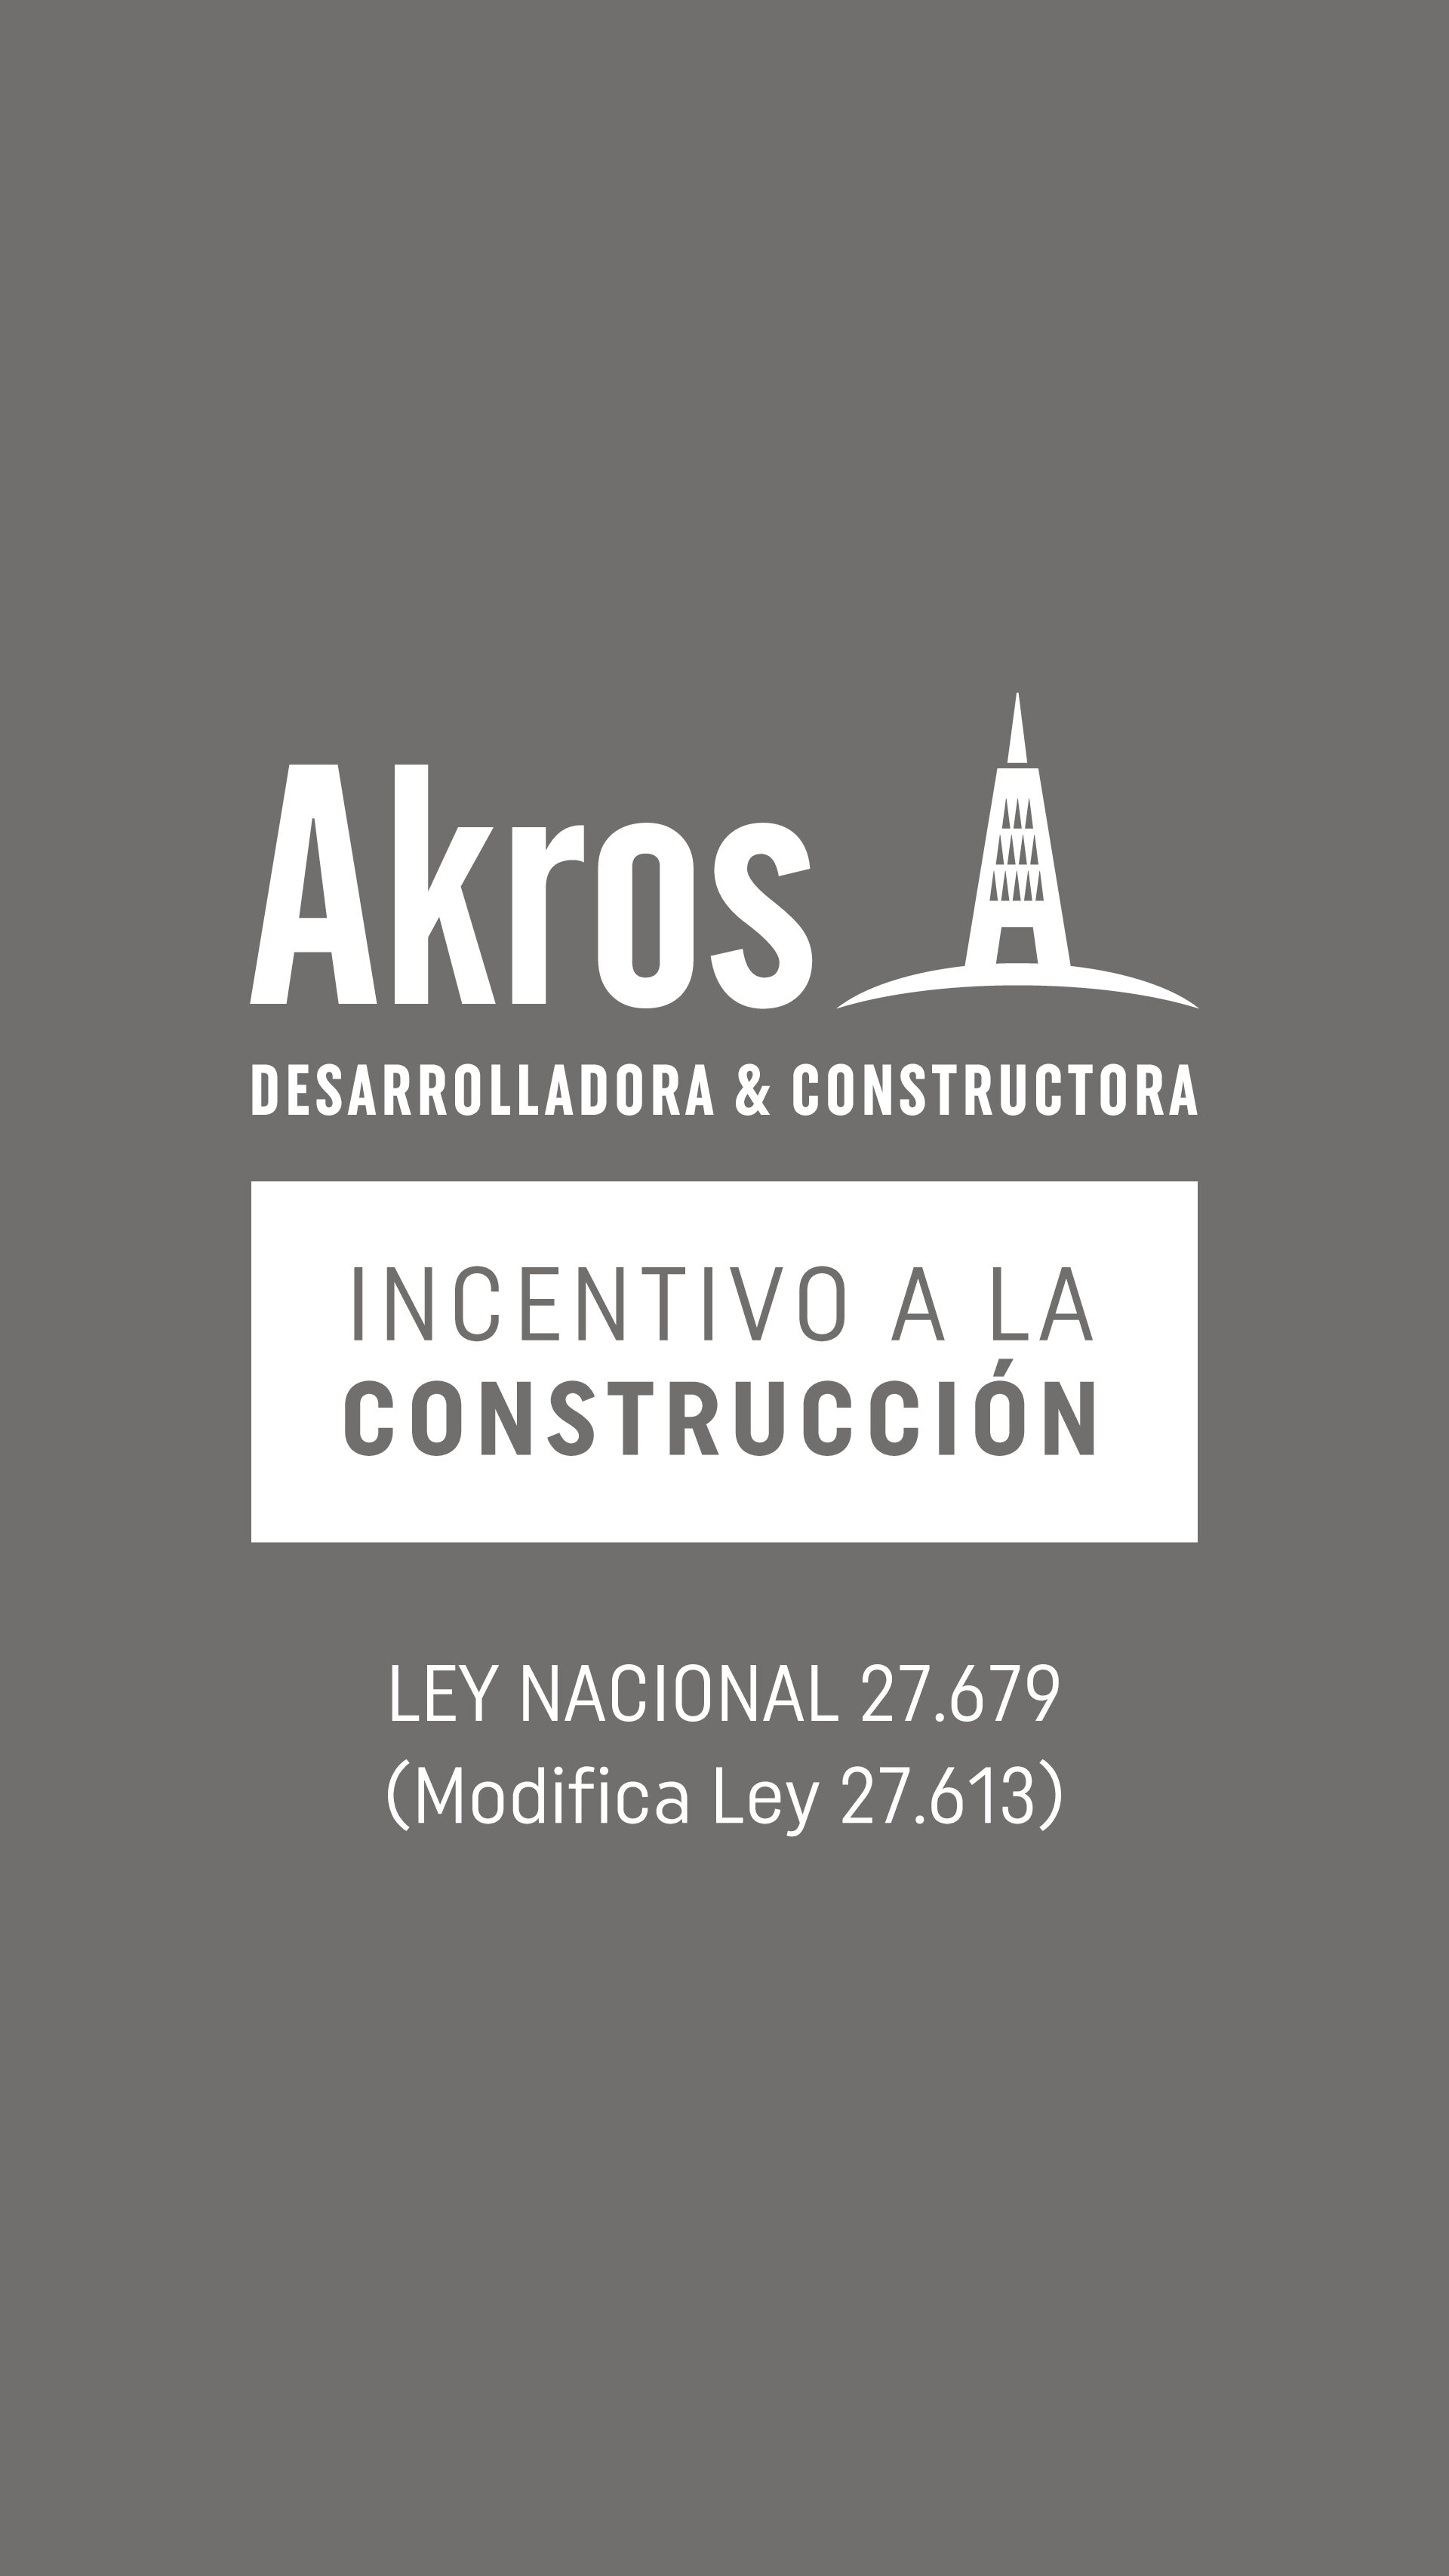 AKROS_Incentivo_Construcción (2)